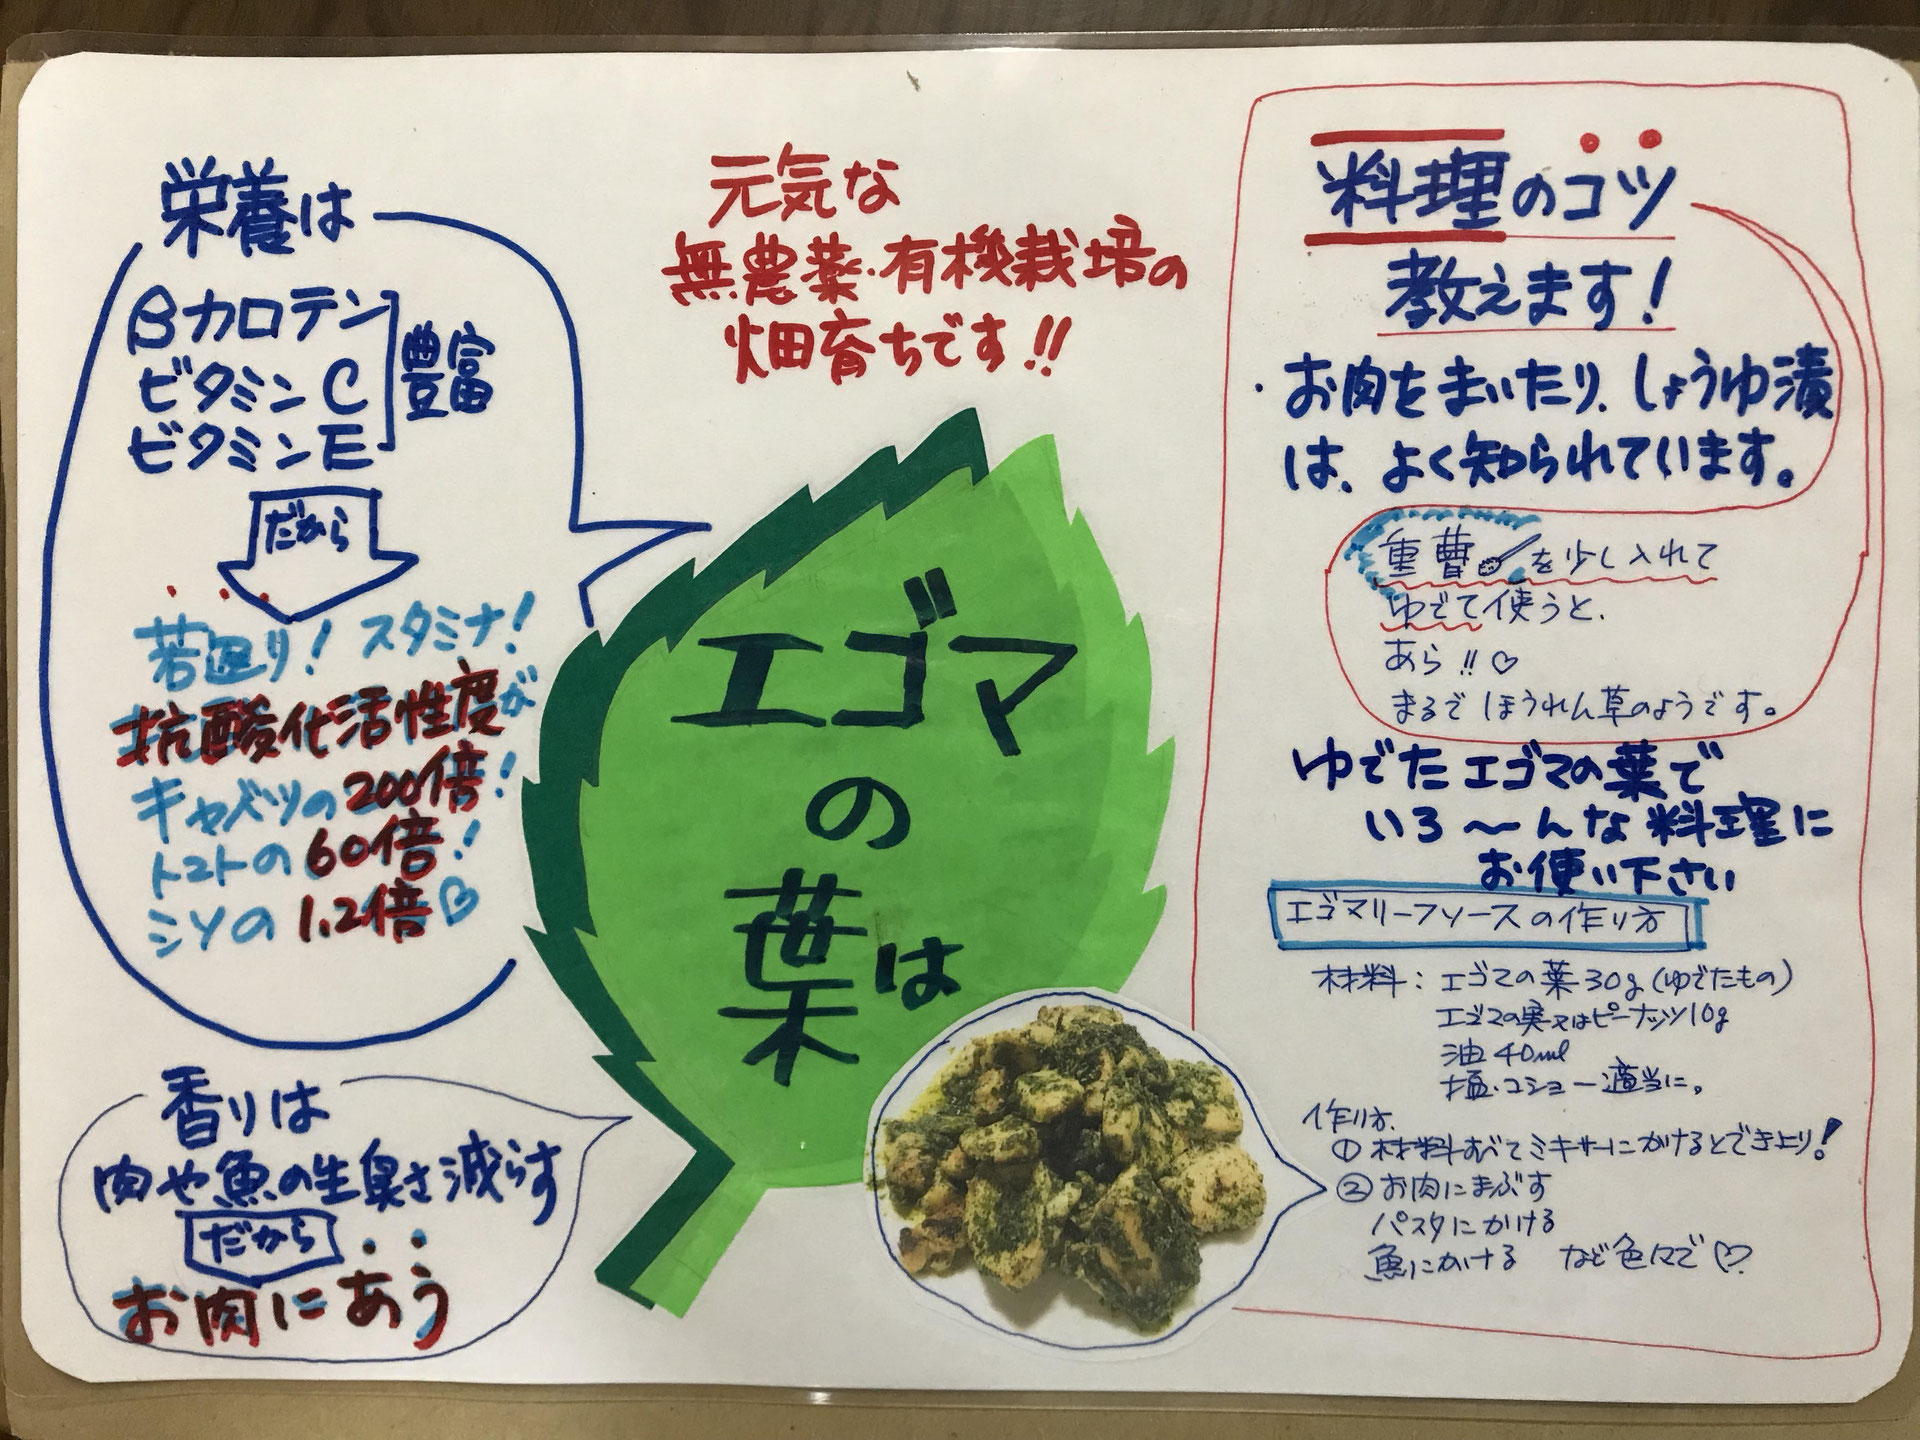 エゴマの葉料理が無限 に広がる秘訣 日本エゴマ協会